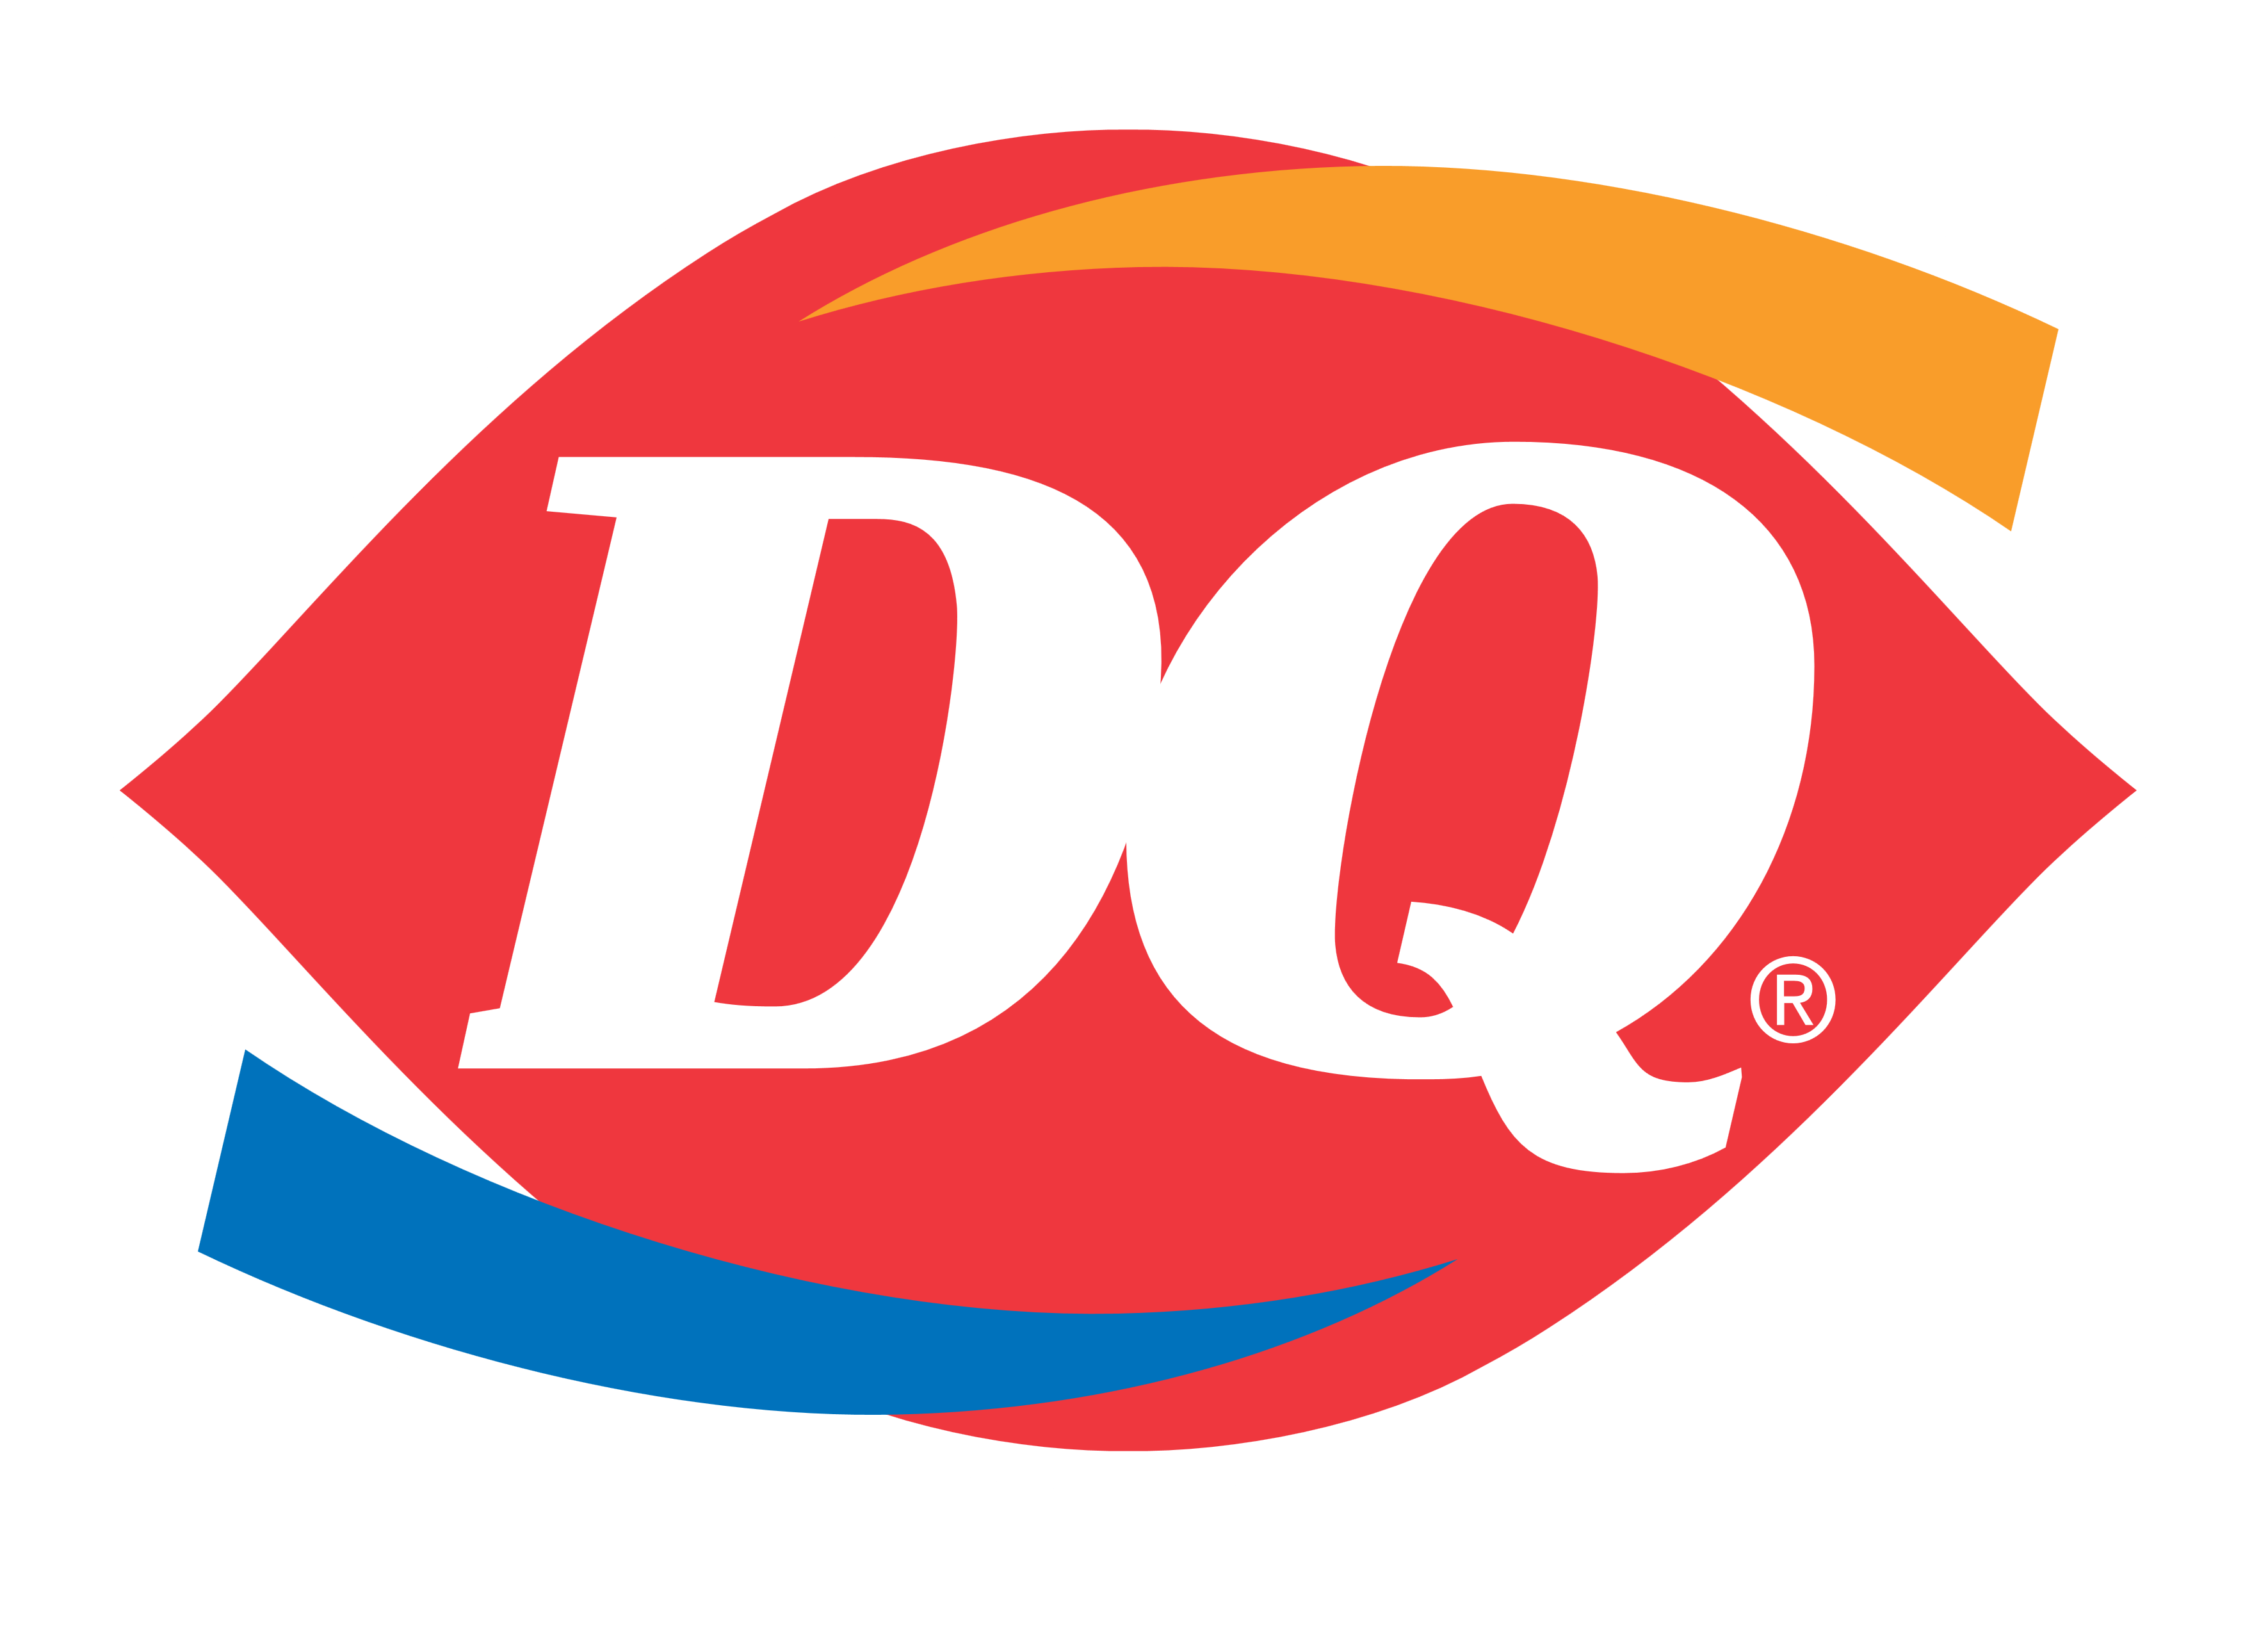 DQ, Dairy Queen logo, logotype